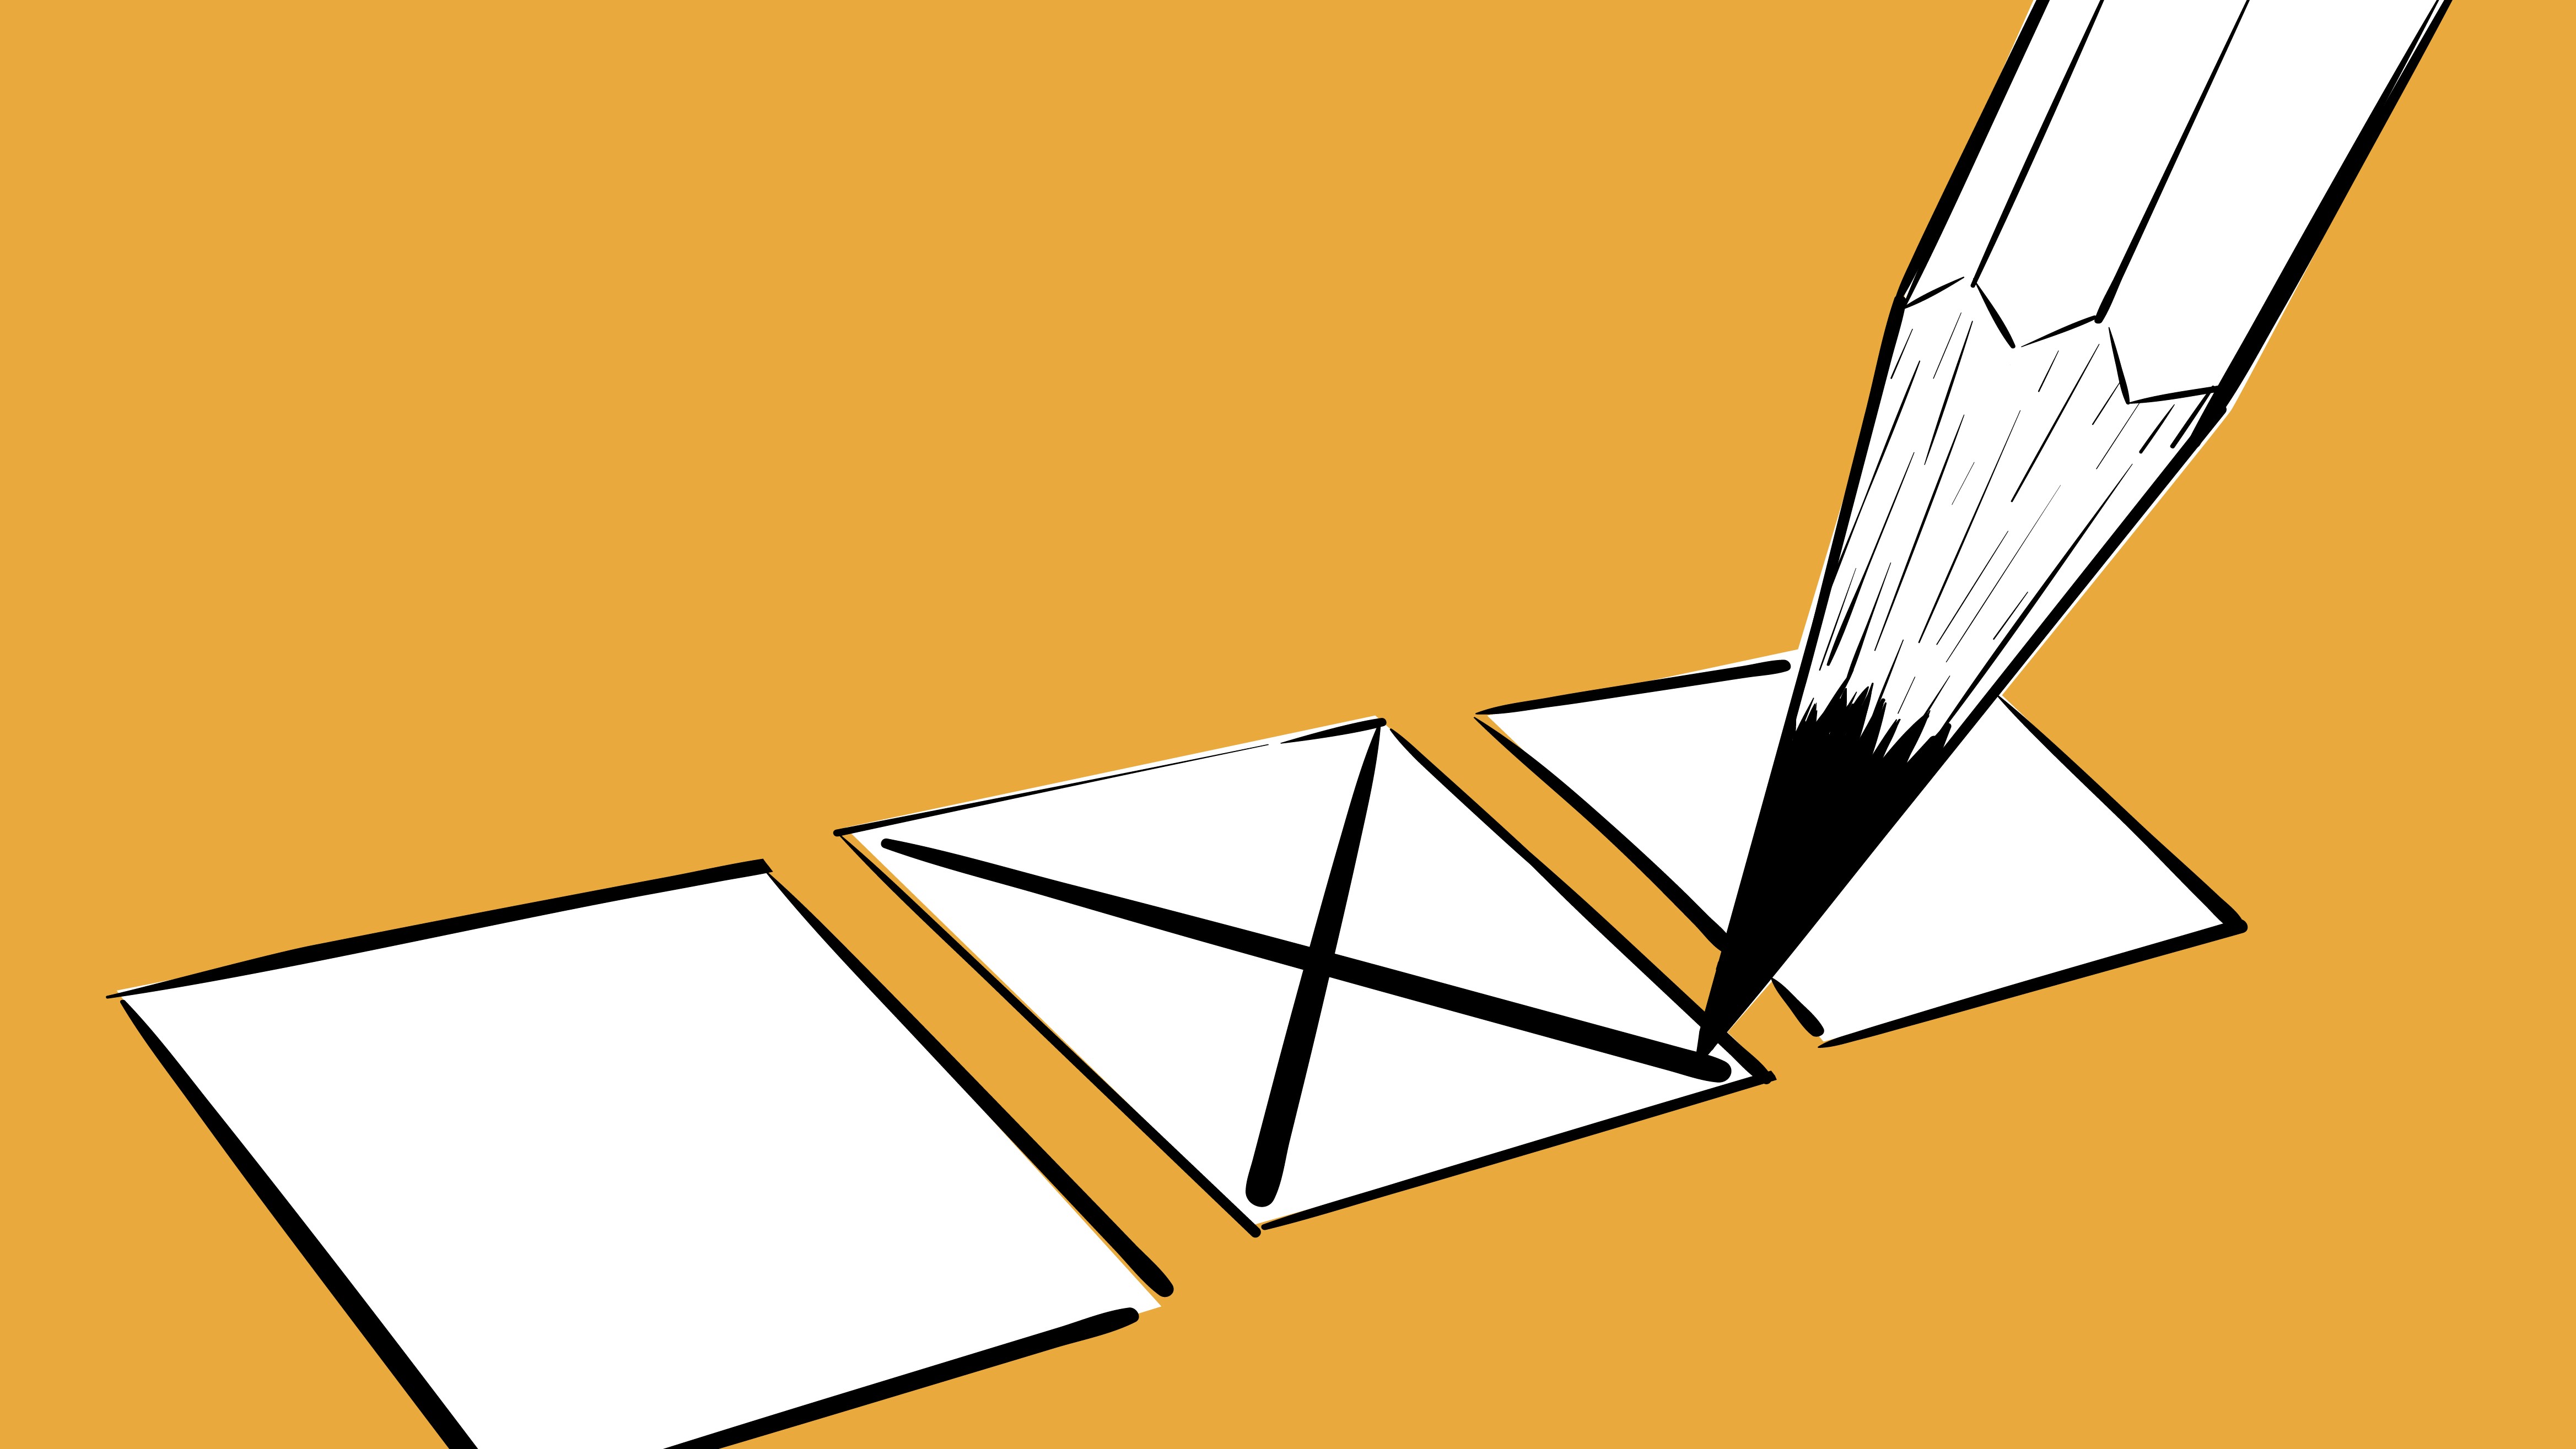 Trzy kratki na karcie do głosowania, ołówek stawia znak X w środkowej